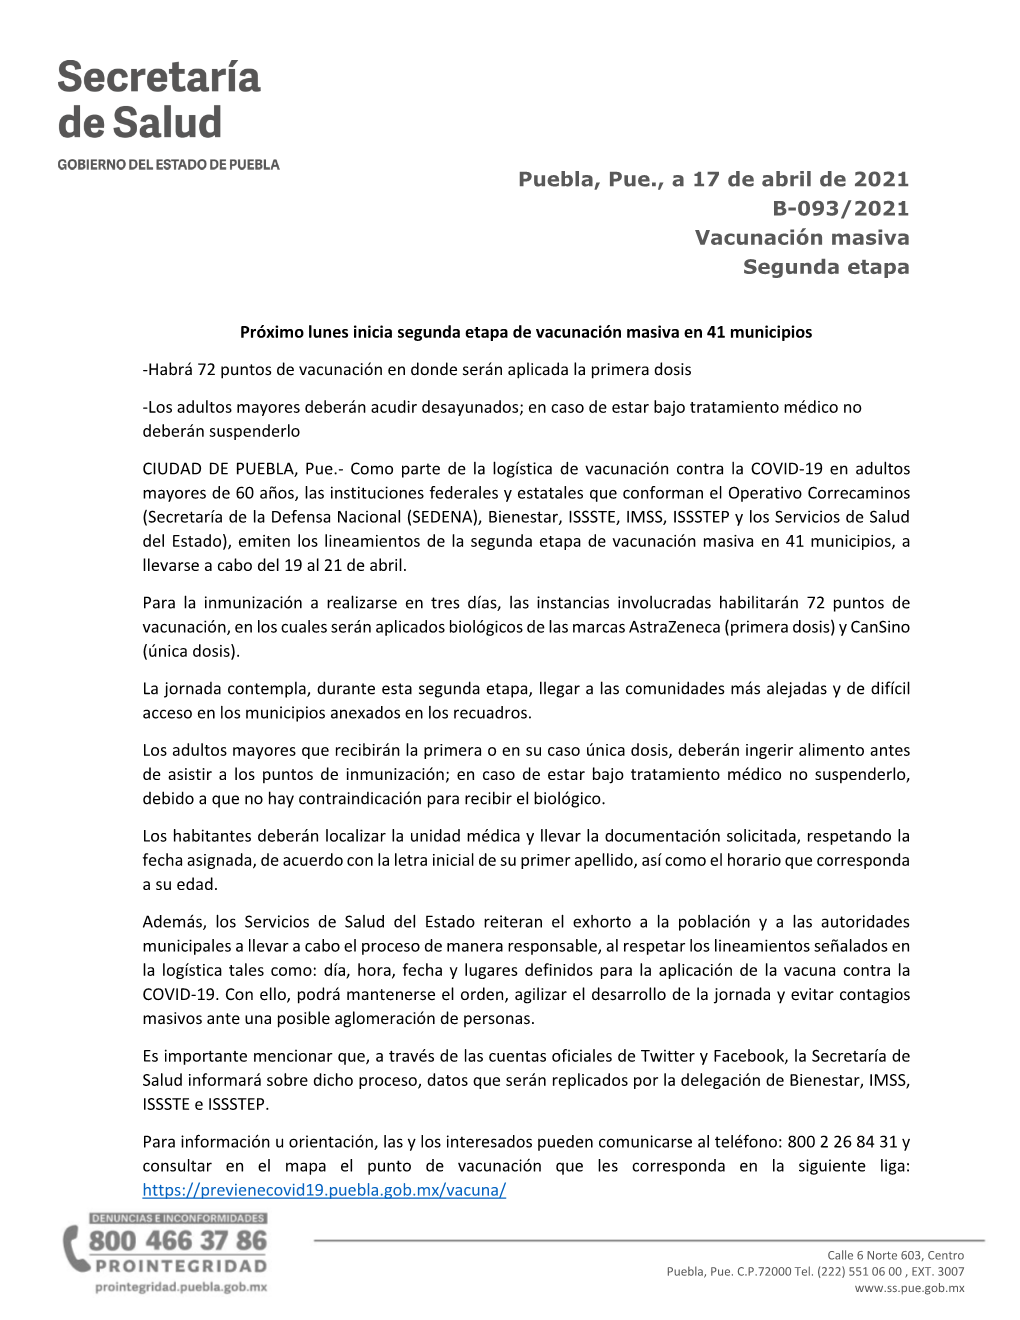 Puebla, Pue., a 17 De Abril De 2021 B-093/2021 Vacunación Masiva Segunda Etapa